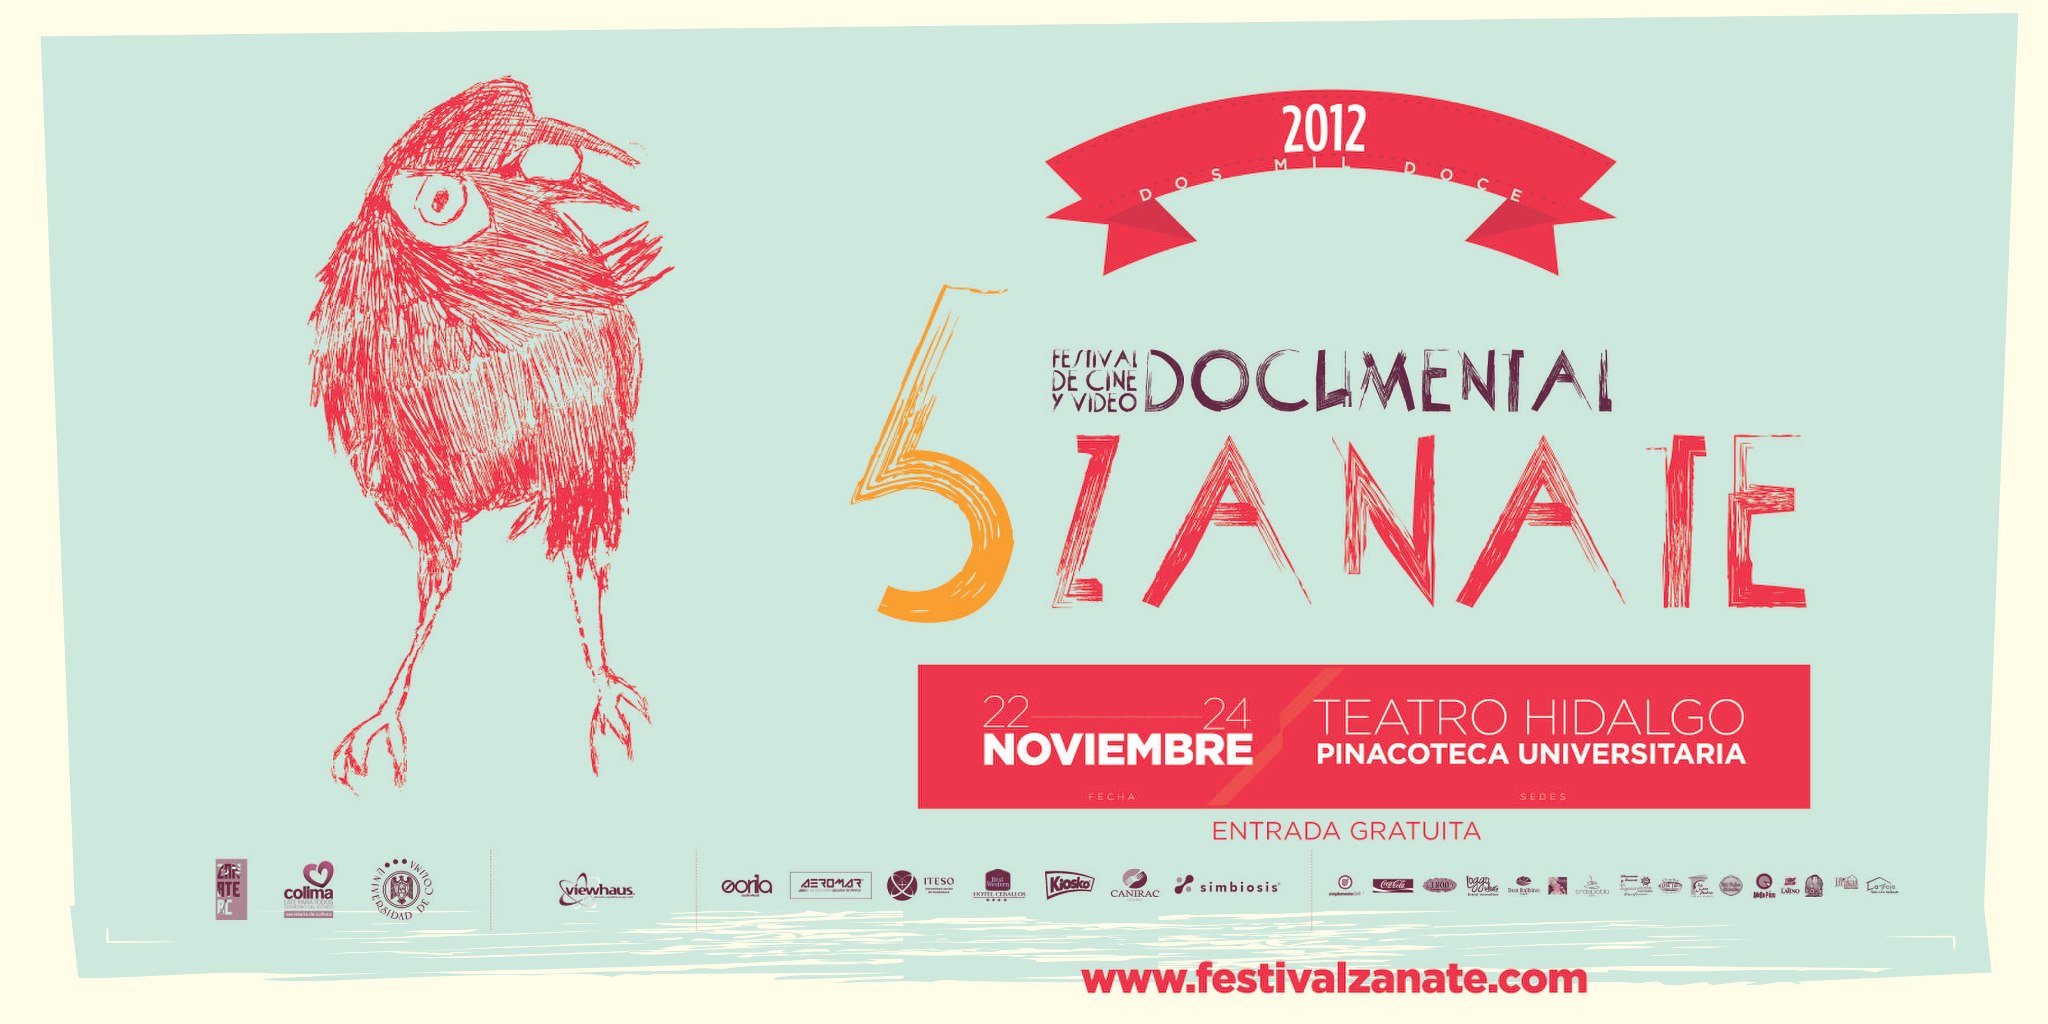 Hoy inicia el 5to Festival de Cine Zanate